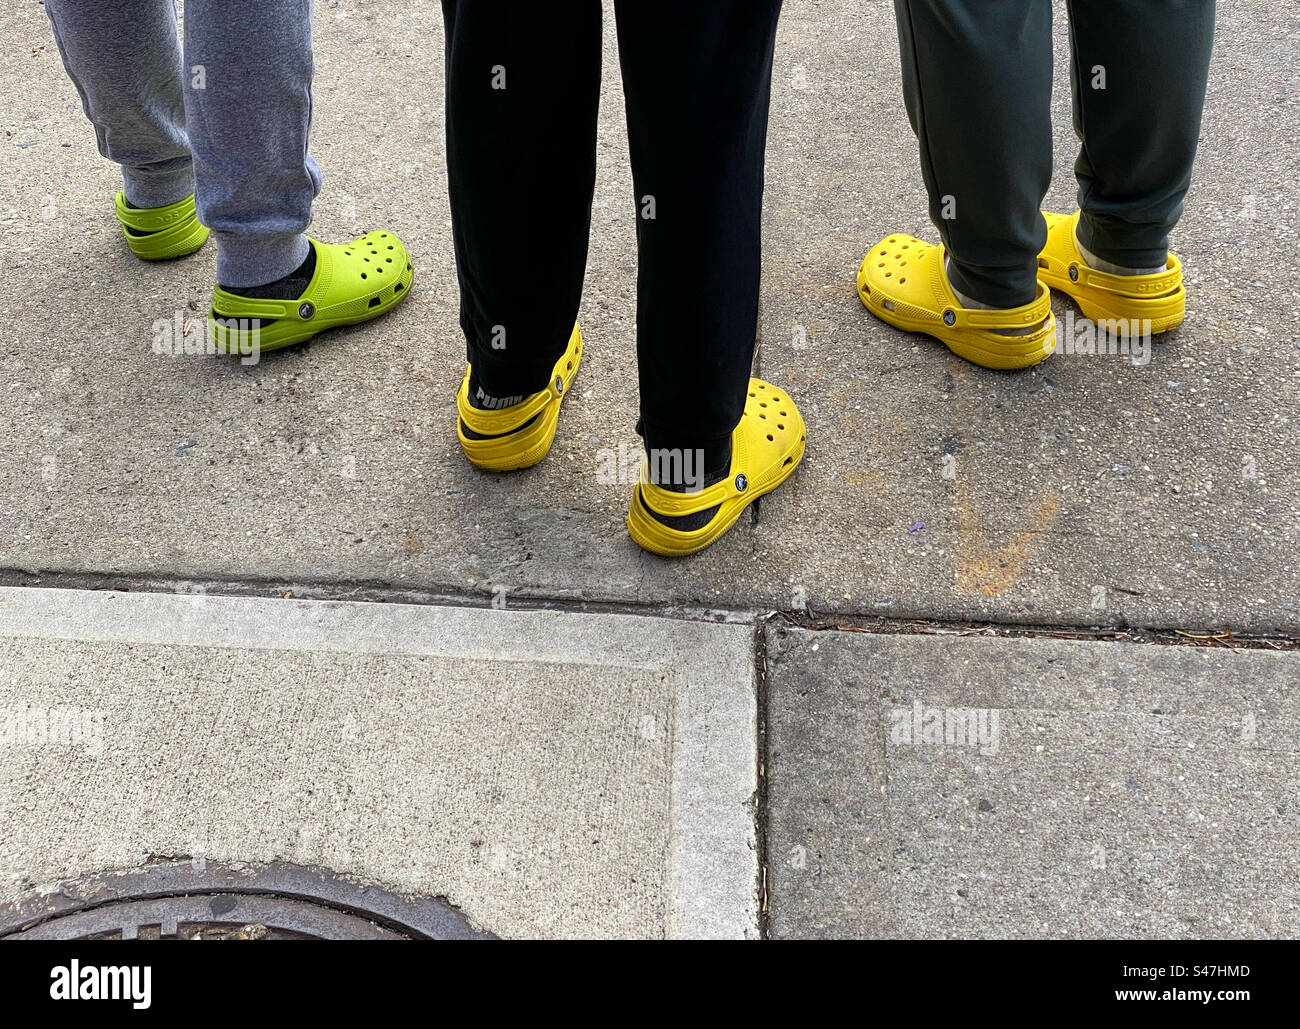 Drei Leute tragen bunte Krokodile, die auf einem Bürgersteig stehen Stockfoto